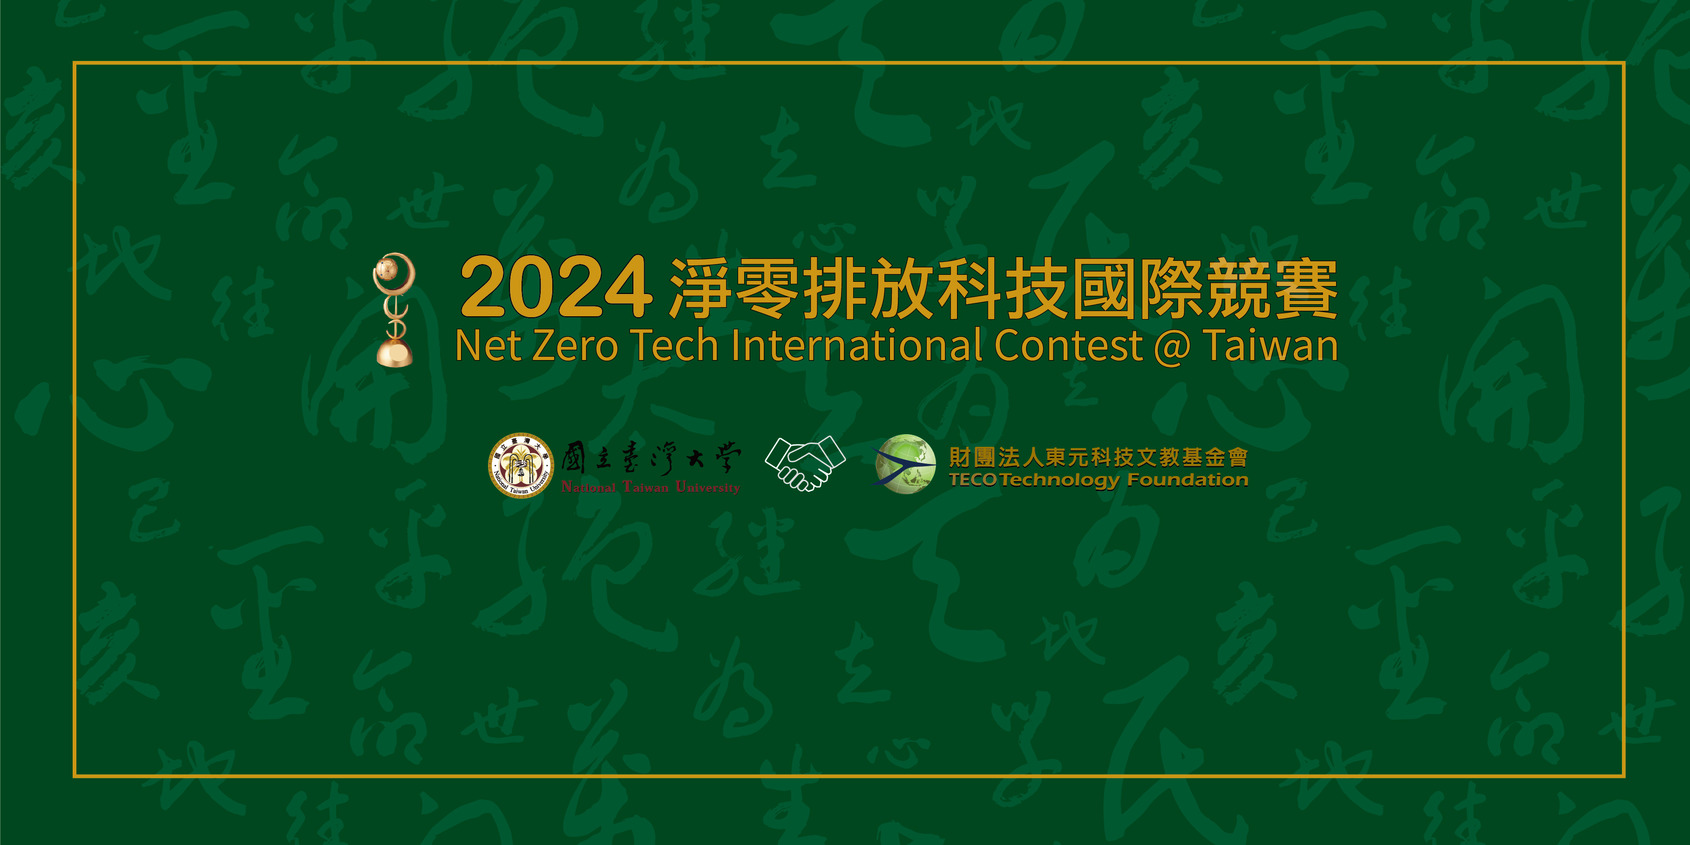 【轉知】2024淨零排放科技國際競賽@ Taiwan自3月1日起受理報名